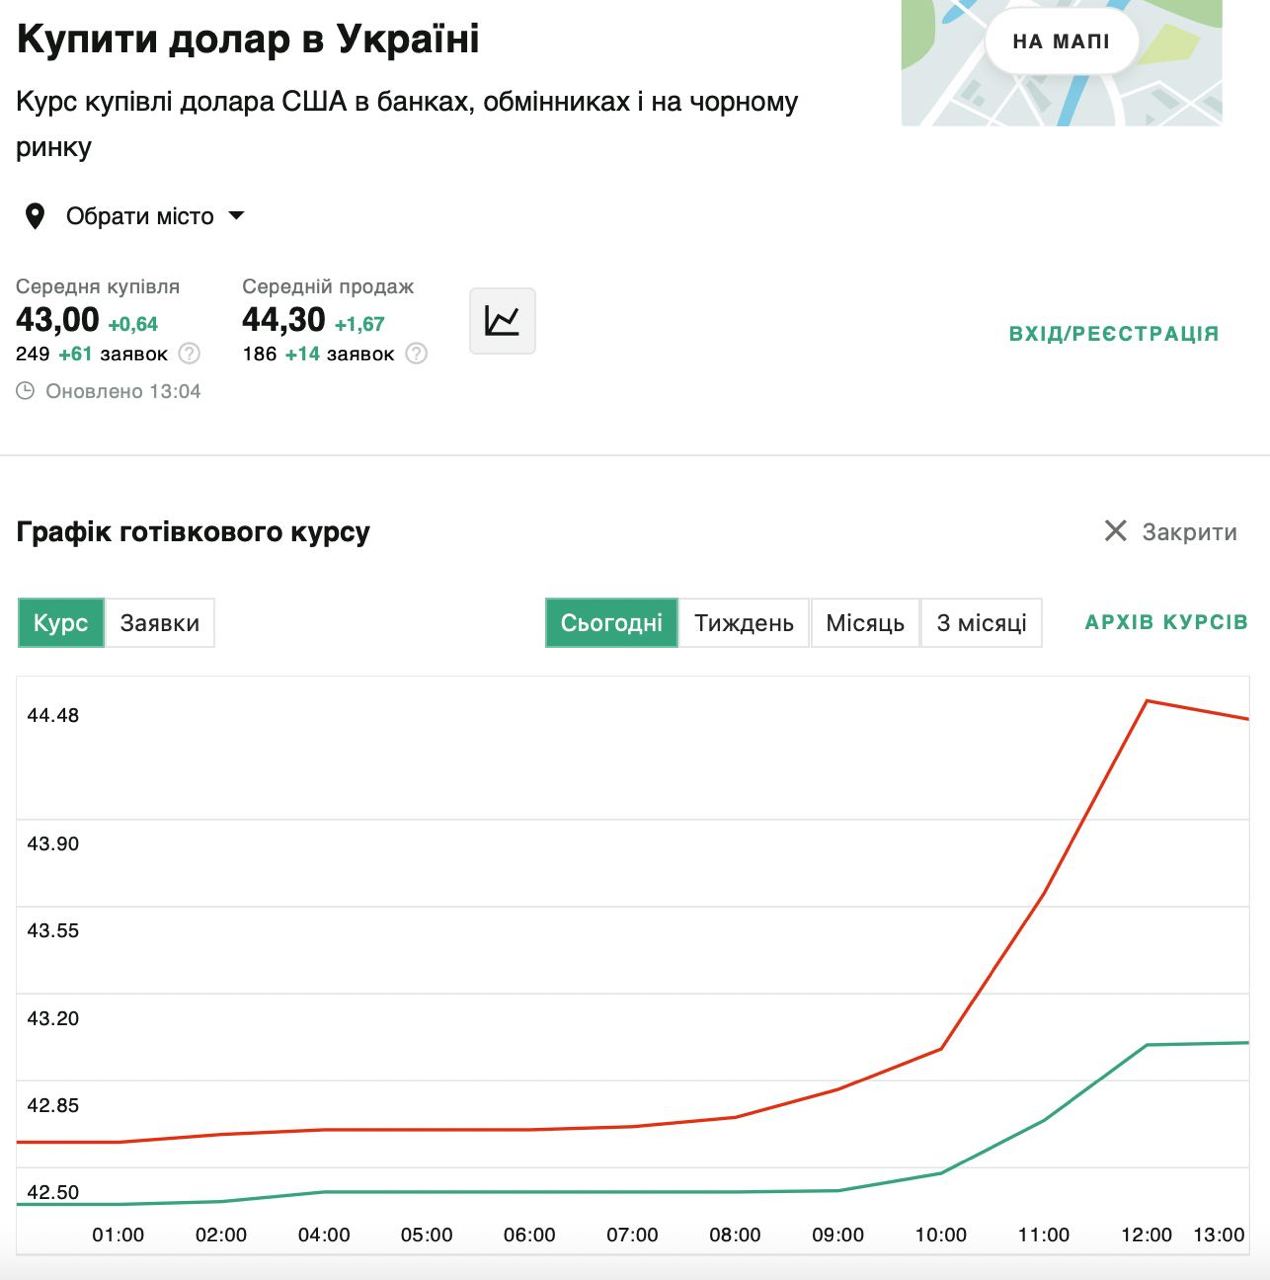 Долар точно не збирається зупинятись - курс в обмінниках Києва вже 44.5-45 грн за 1$.